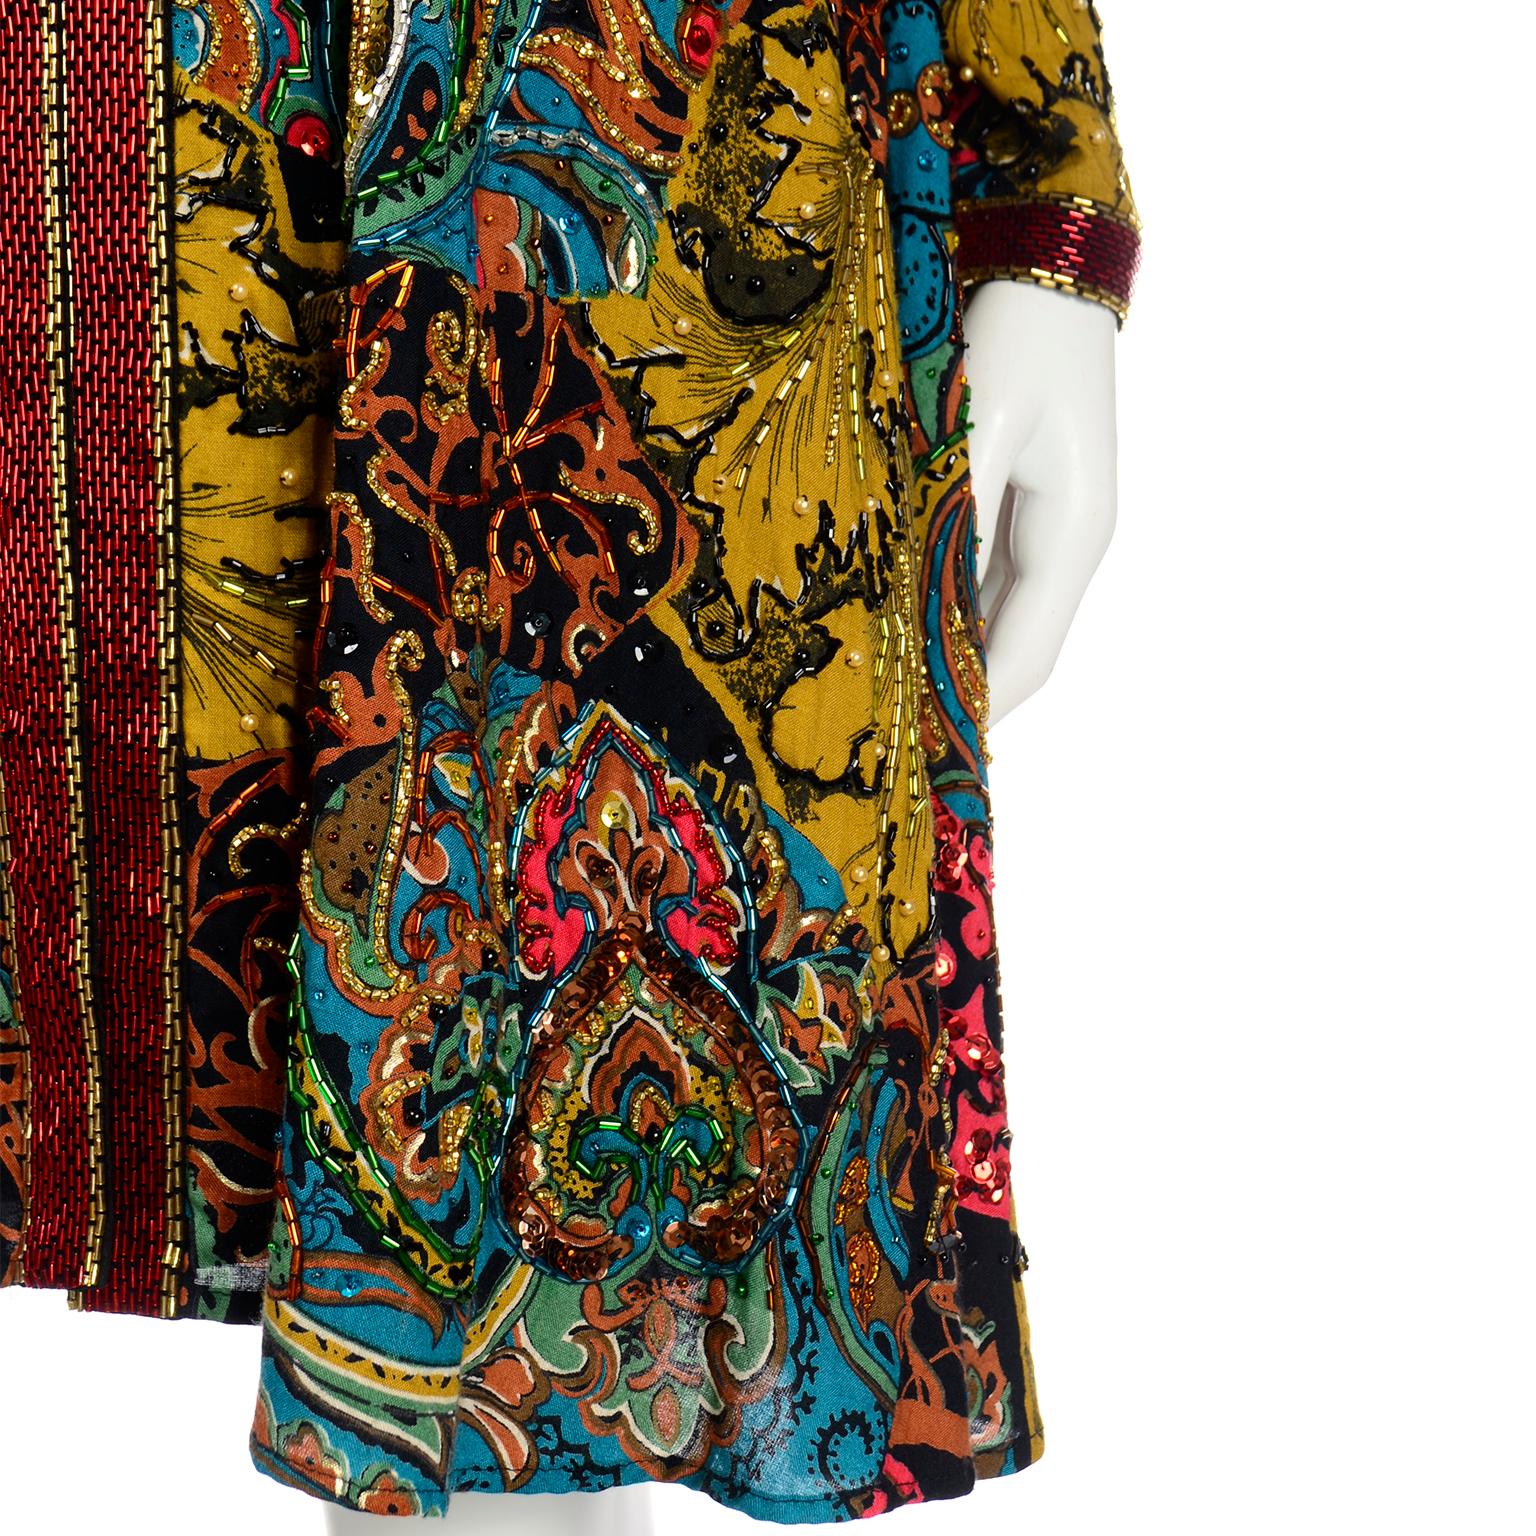 Vintage Diane Freis Beaded Sequin Swing Jacket in Multi Colored Baroque Print 4